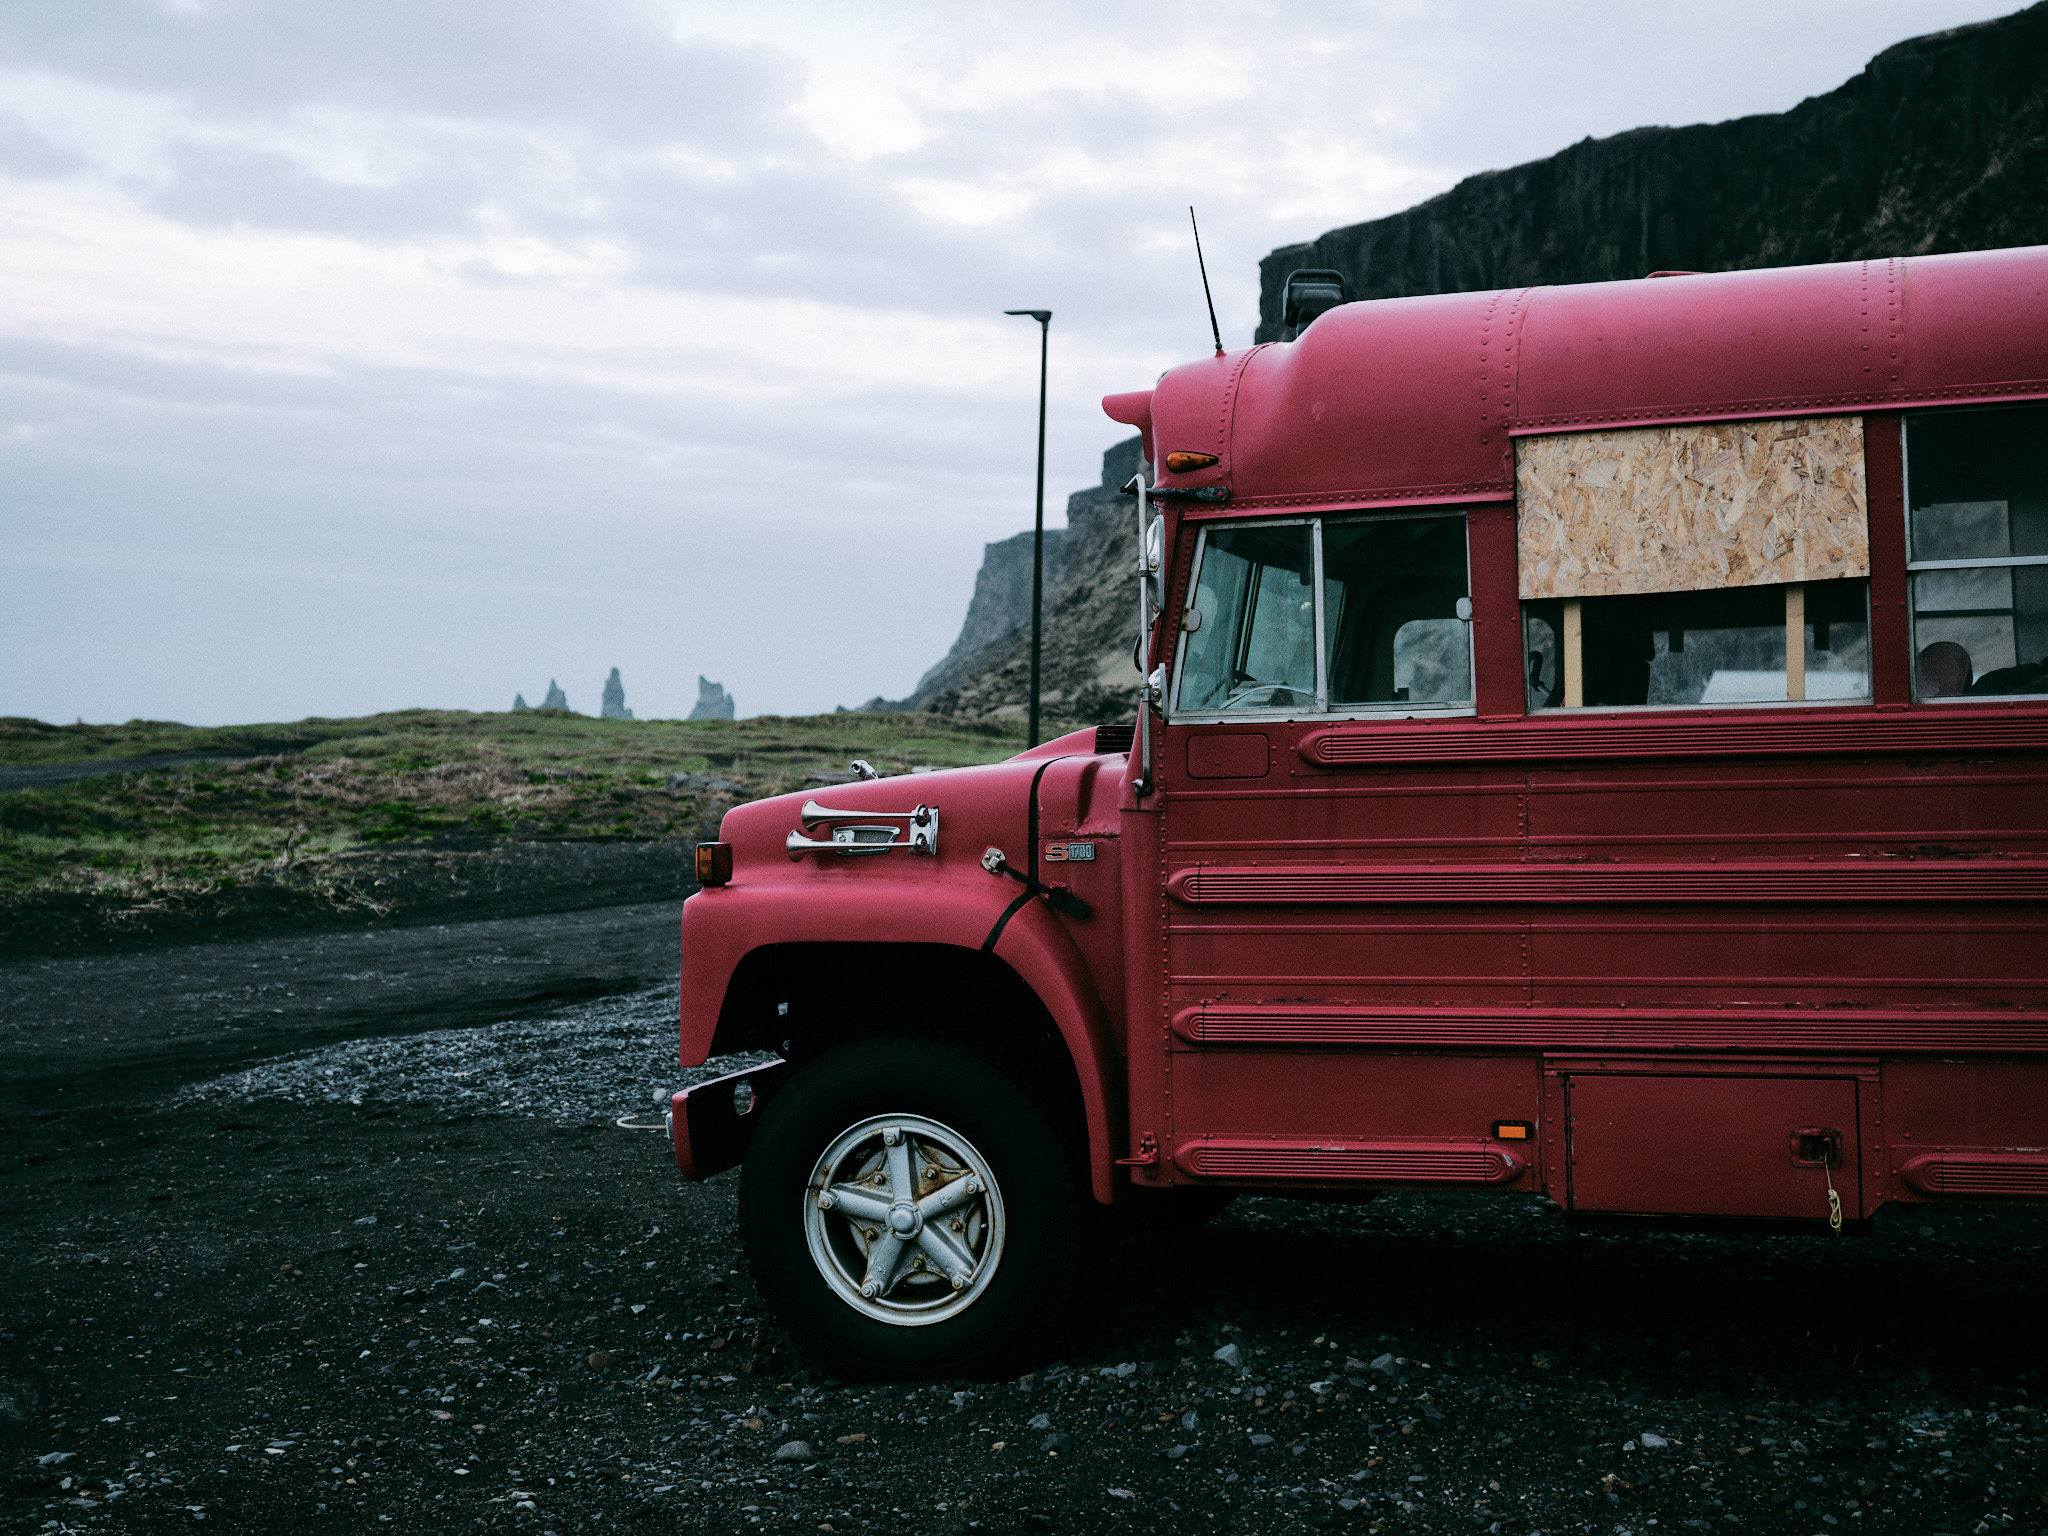 Strret foto på Island - Gammel bus